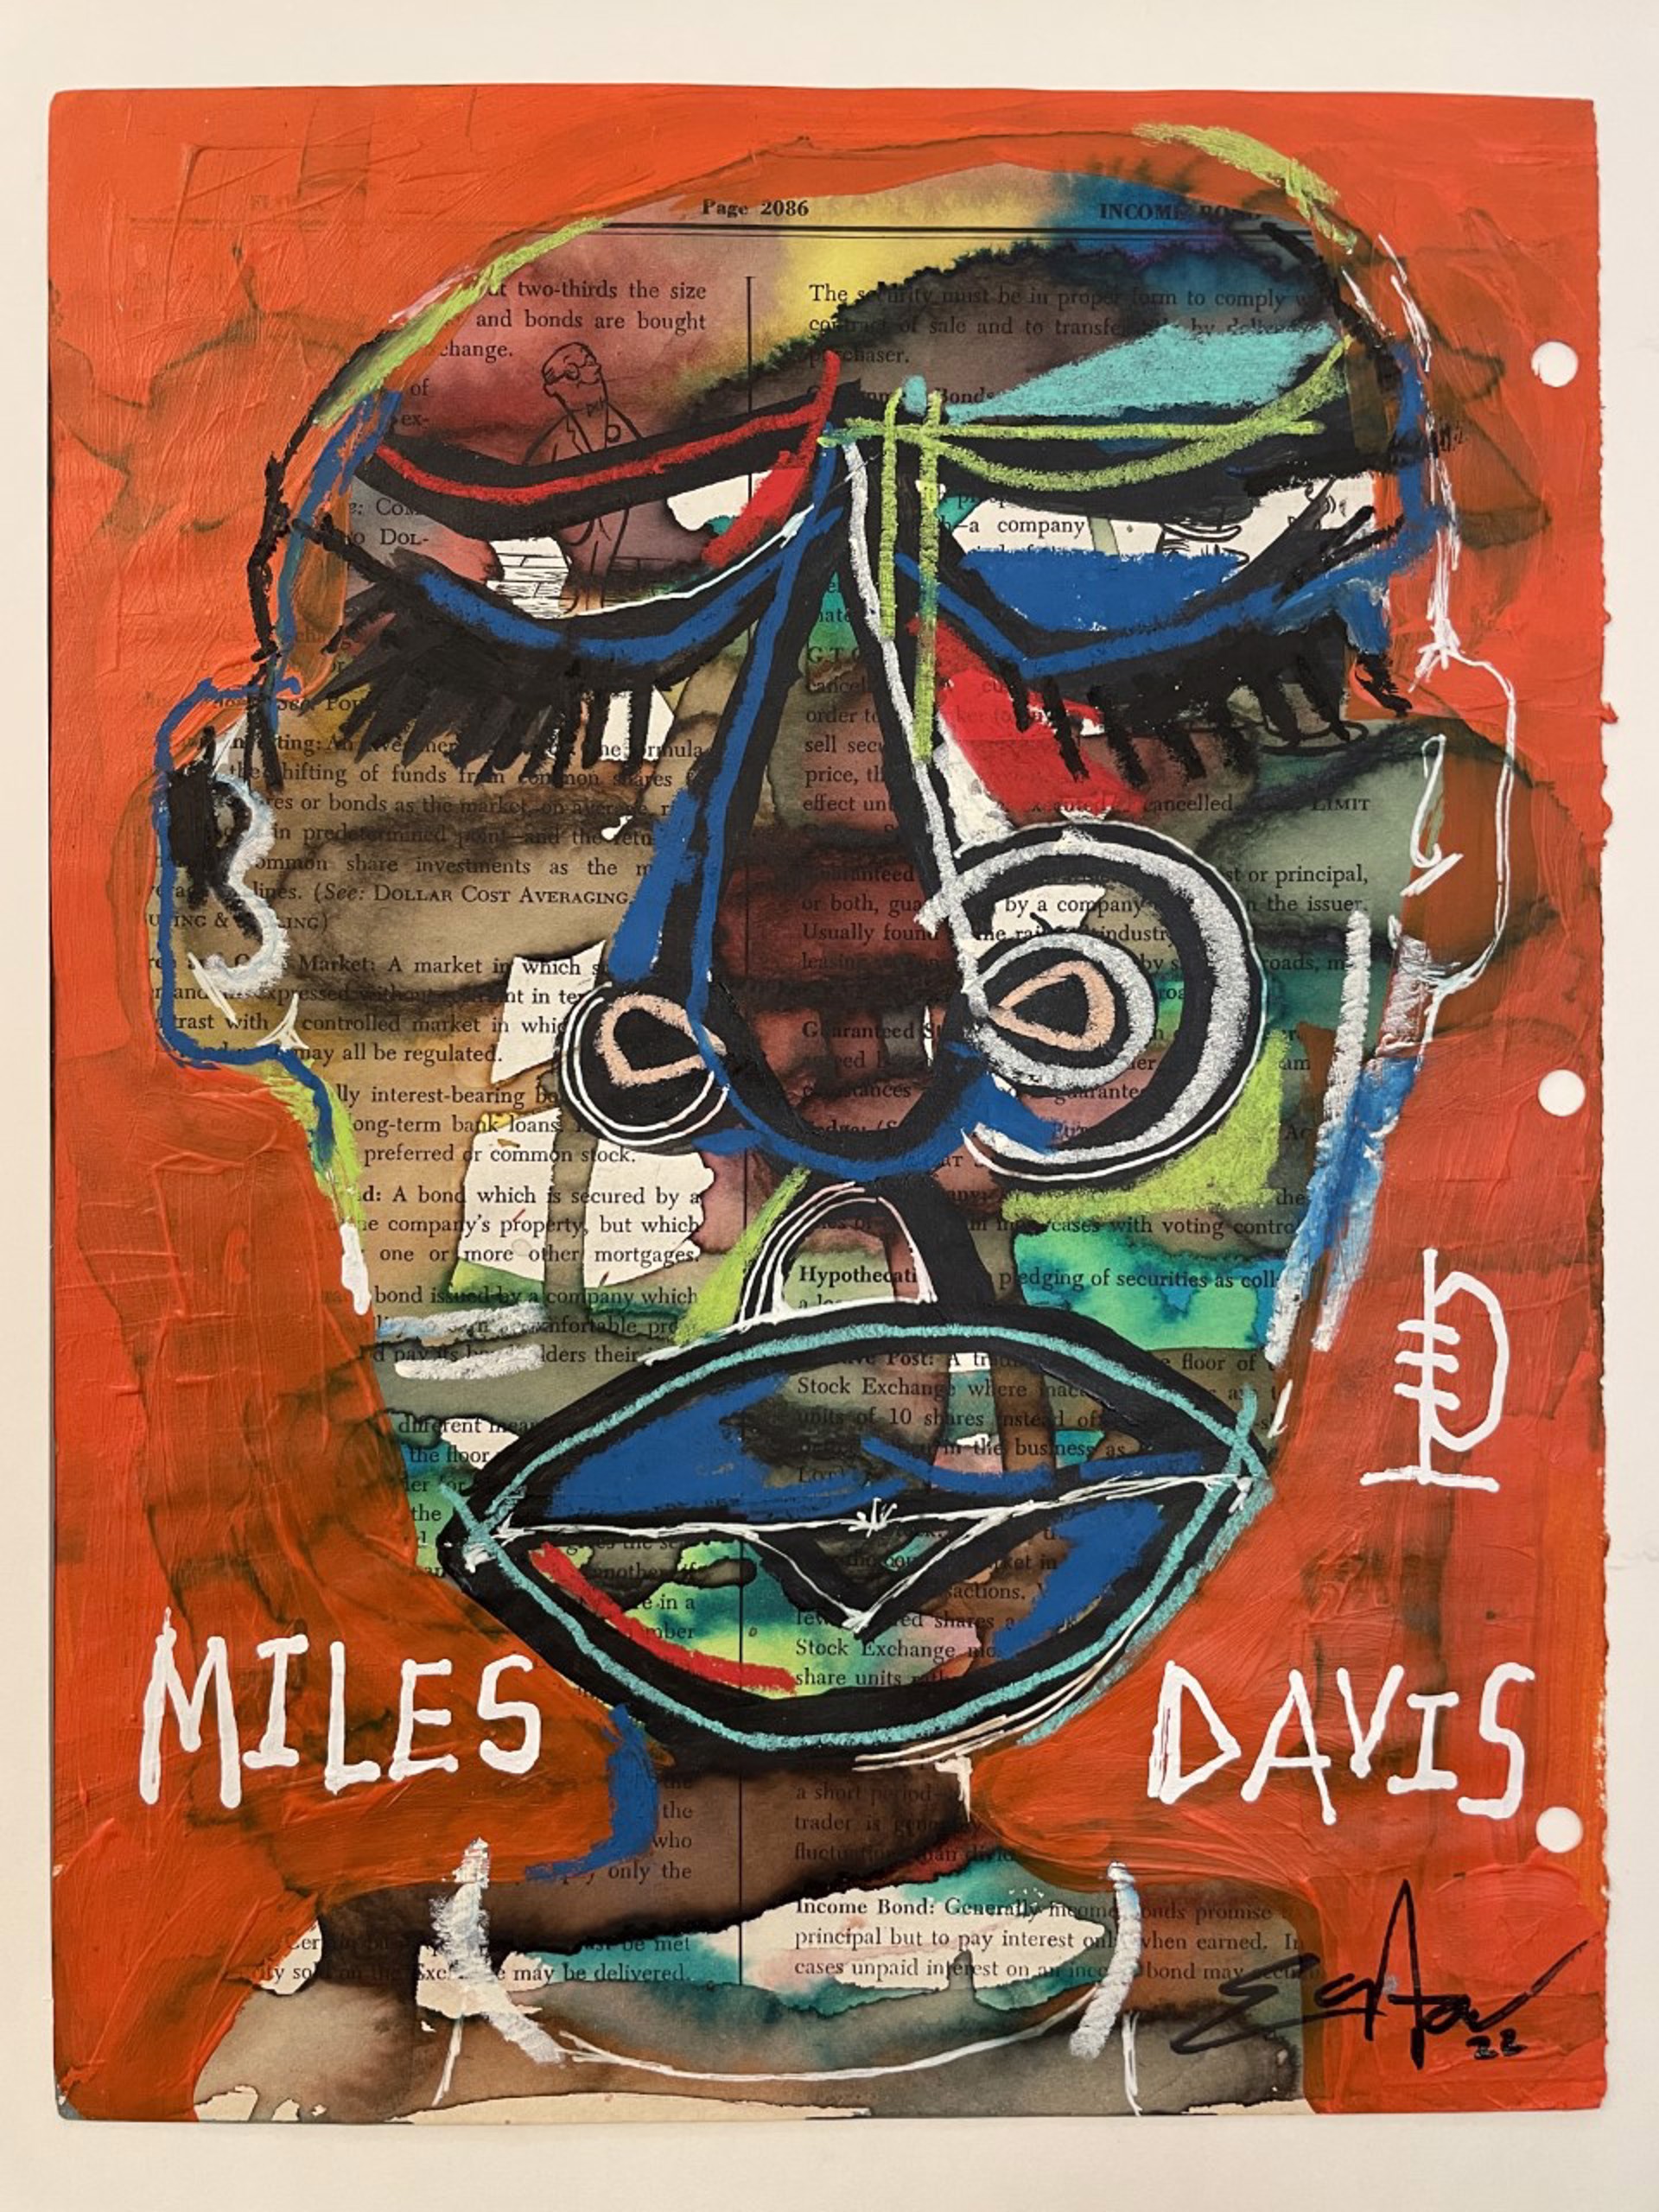 "Miles Davis" by Easton Davy